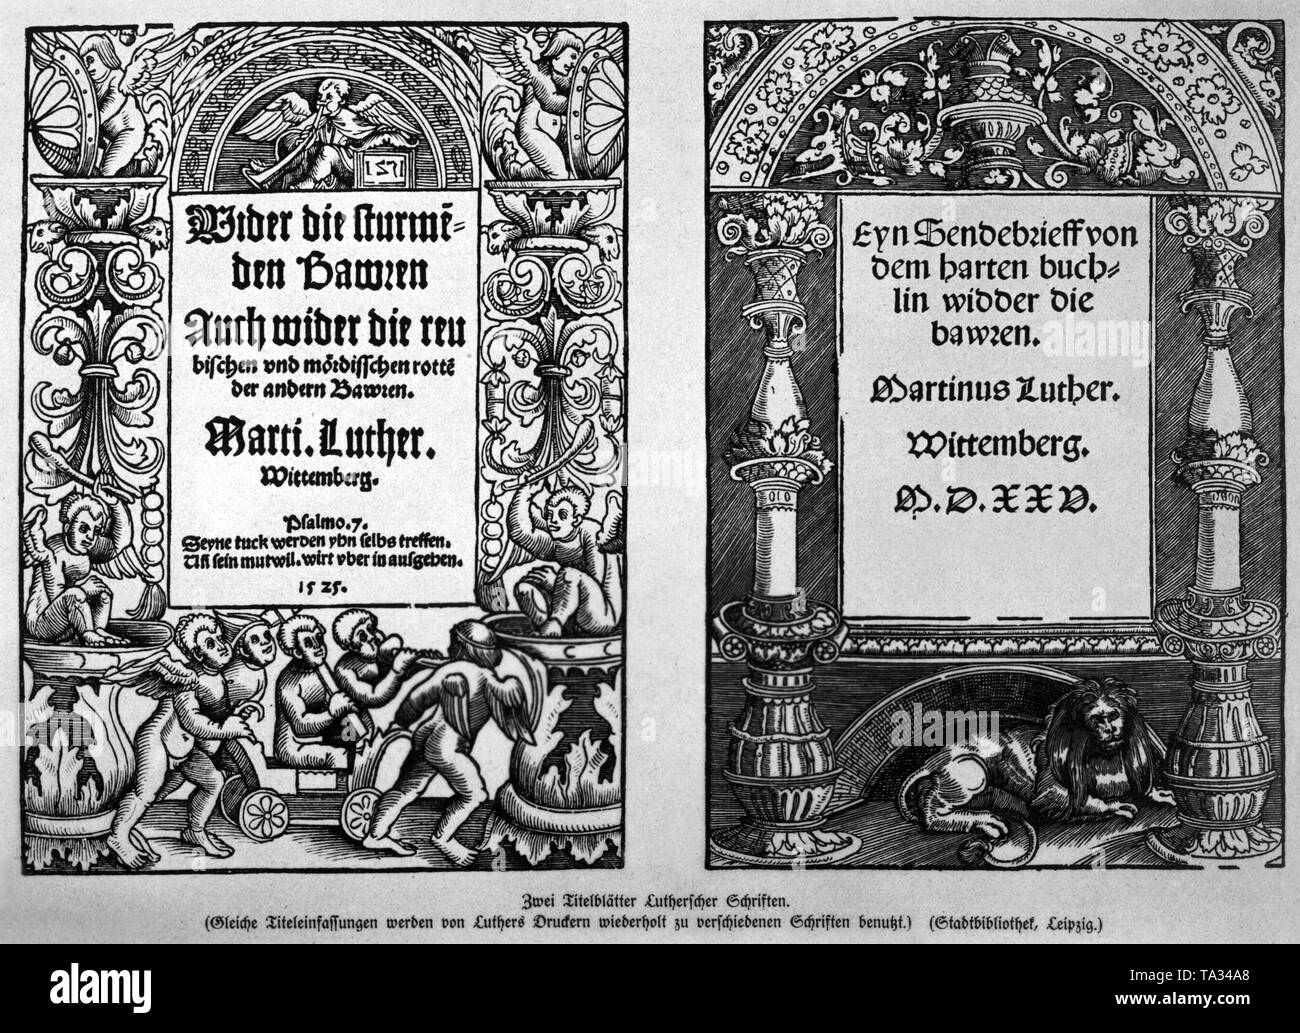 Titelseiten von Luthers Schriften gegen die Erstürmung der Bauern (Größeres sterben stuermenden Bauern'), 1525, Links und "einen Offenen Brief an die rauen Buch gegen die Bauern" ('' Ein Sendebrief von dem harten Buechlein wieder sterben Bauern'), wo Luther selbst aus dem deutschen Bauernkrieg distanziert, die entscheidend durch die Grundsätze der Reformation gerechtfertigt war. Stockfoto